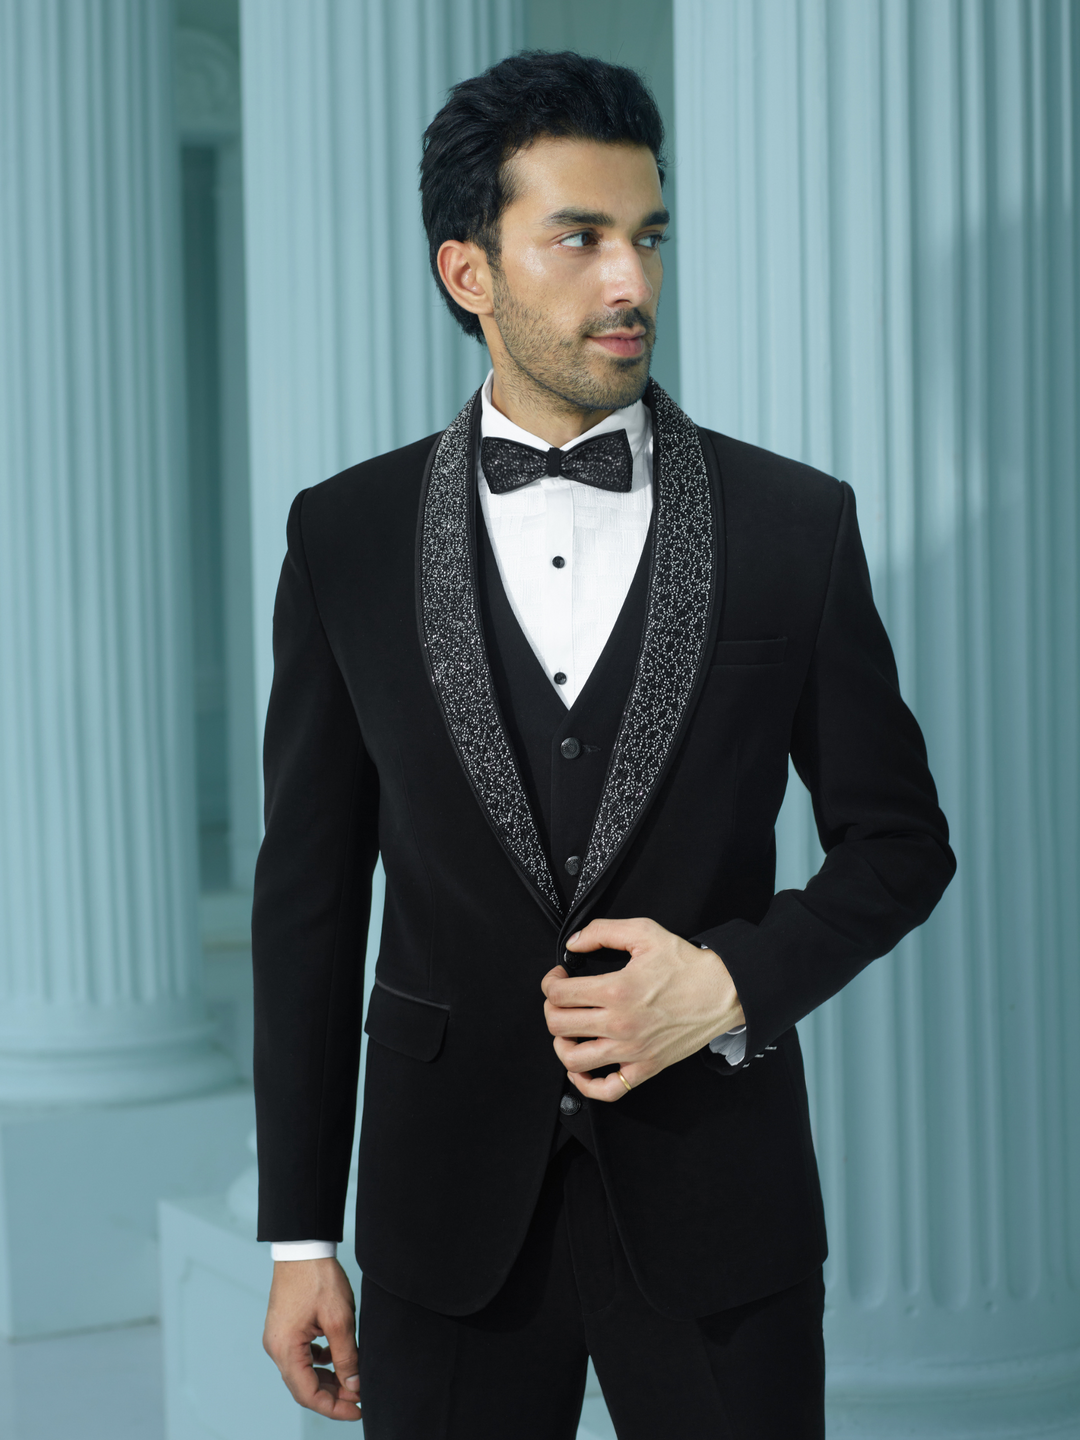 Classic black suit with waist belt. – Rechannel Fashions